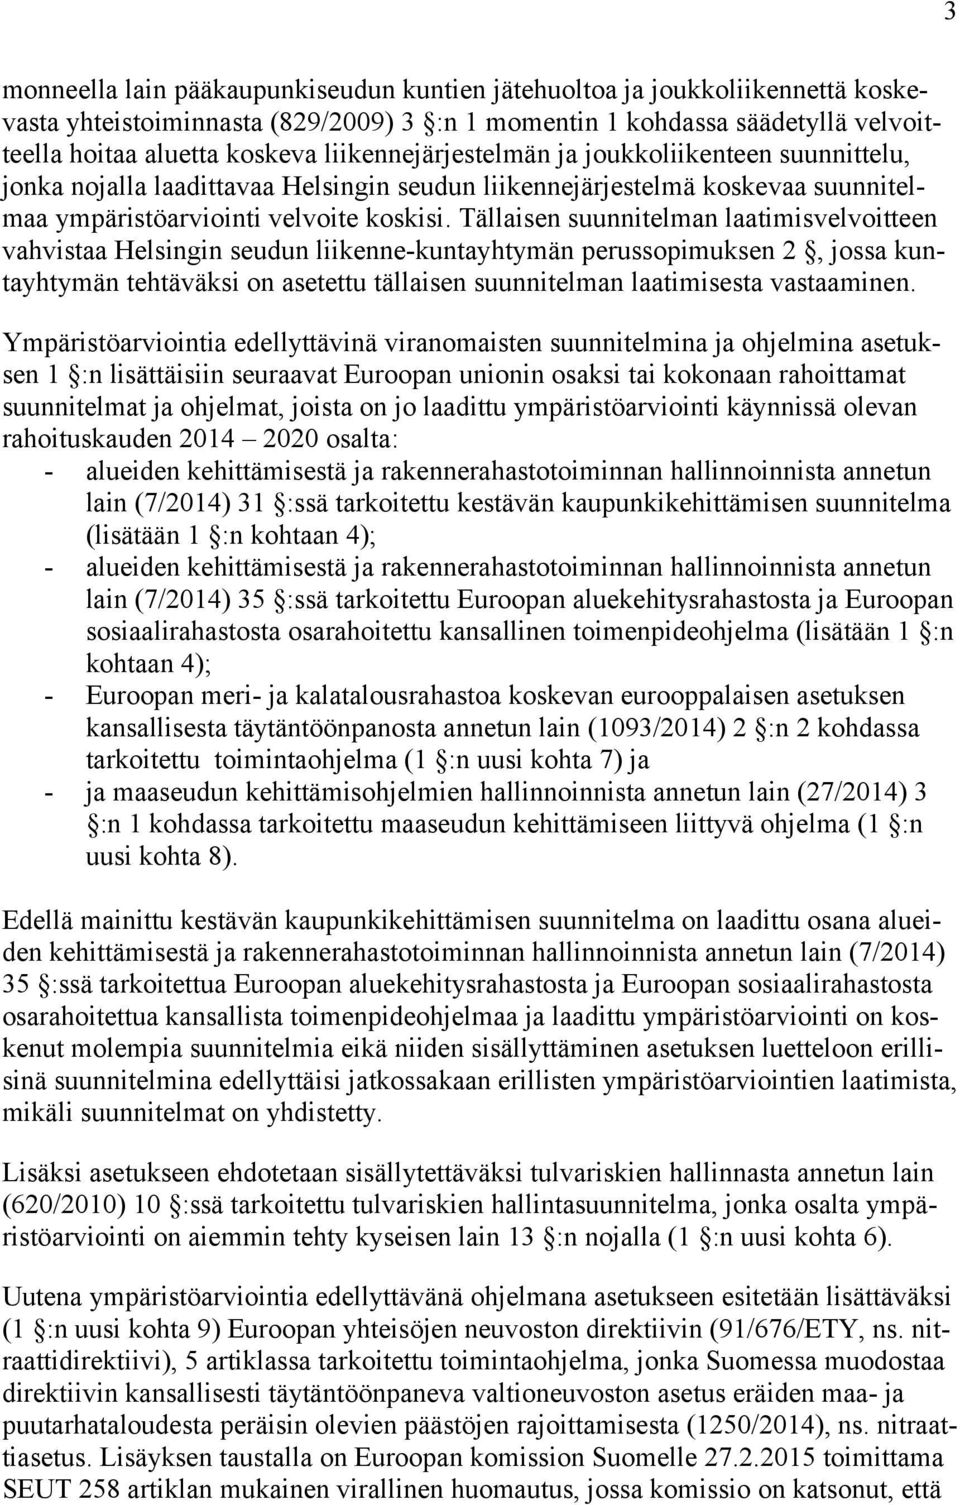 Tällaisen suunnitelman laatimisvelvoitteen vahvistaa Helsingin seudun liikenne-kuntayhtymän perussopimuksen 2, jossa kuntayhtymän tehtäväksi on asetettu tällaisen suunnitelman laatimisesta